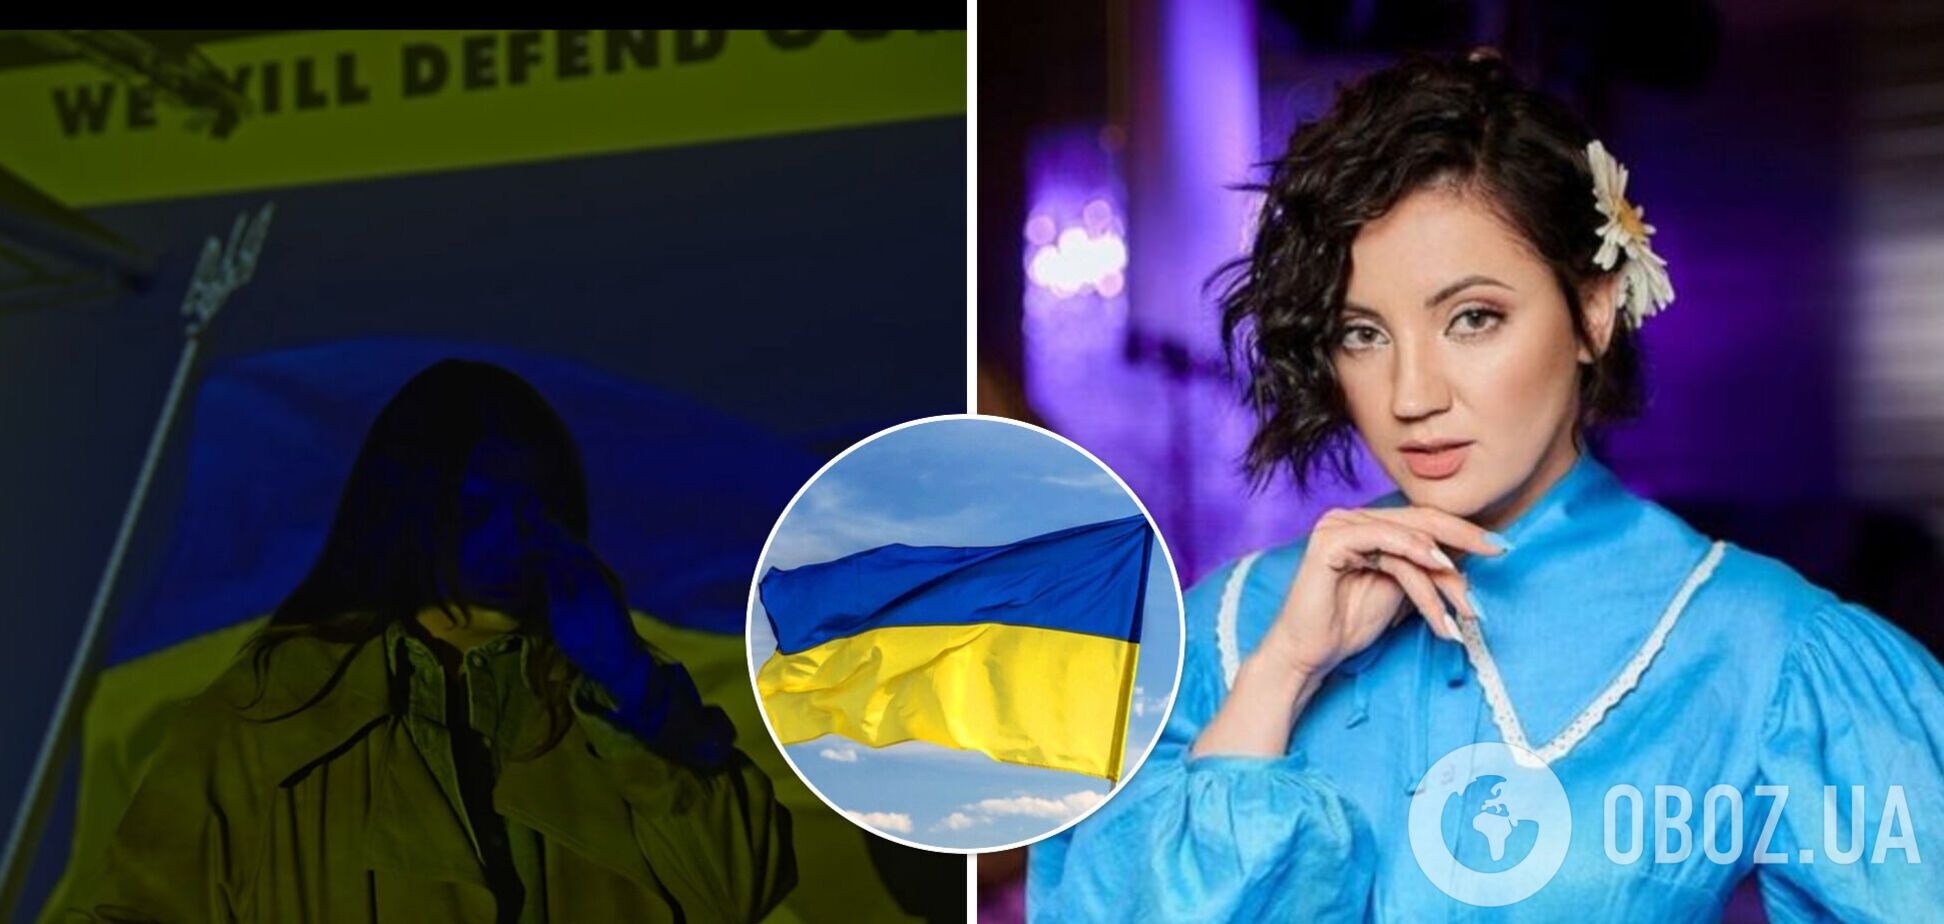 KAZKA и Оля Цыбульская выпустили песни, посвященные чувствам влюбленных украинцев и обычных граждан на войне